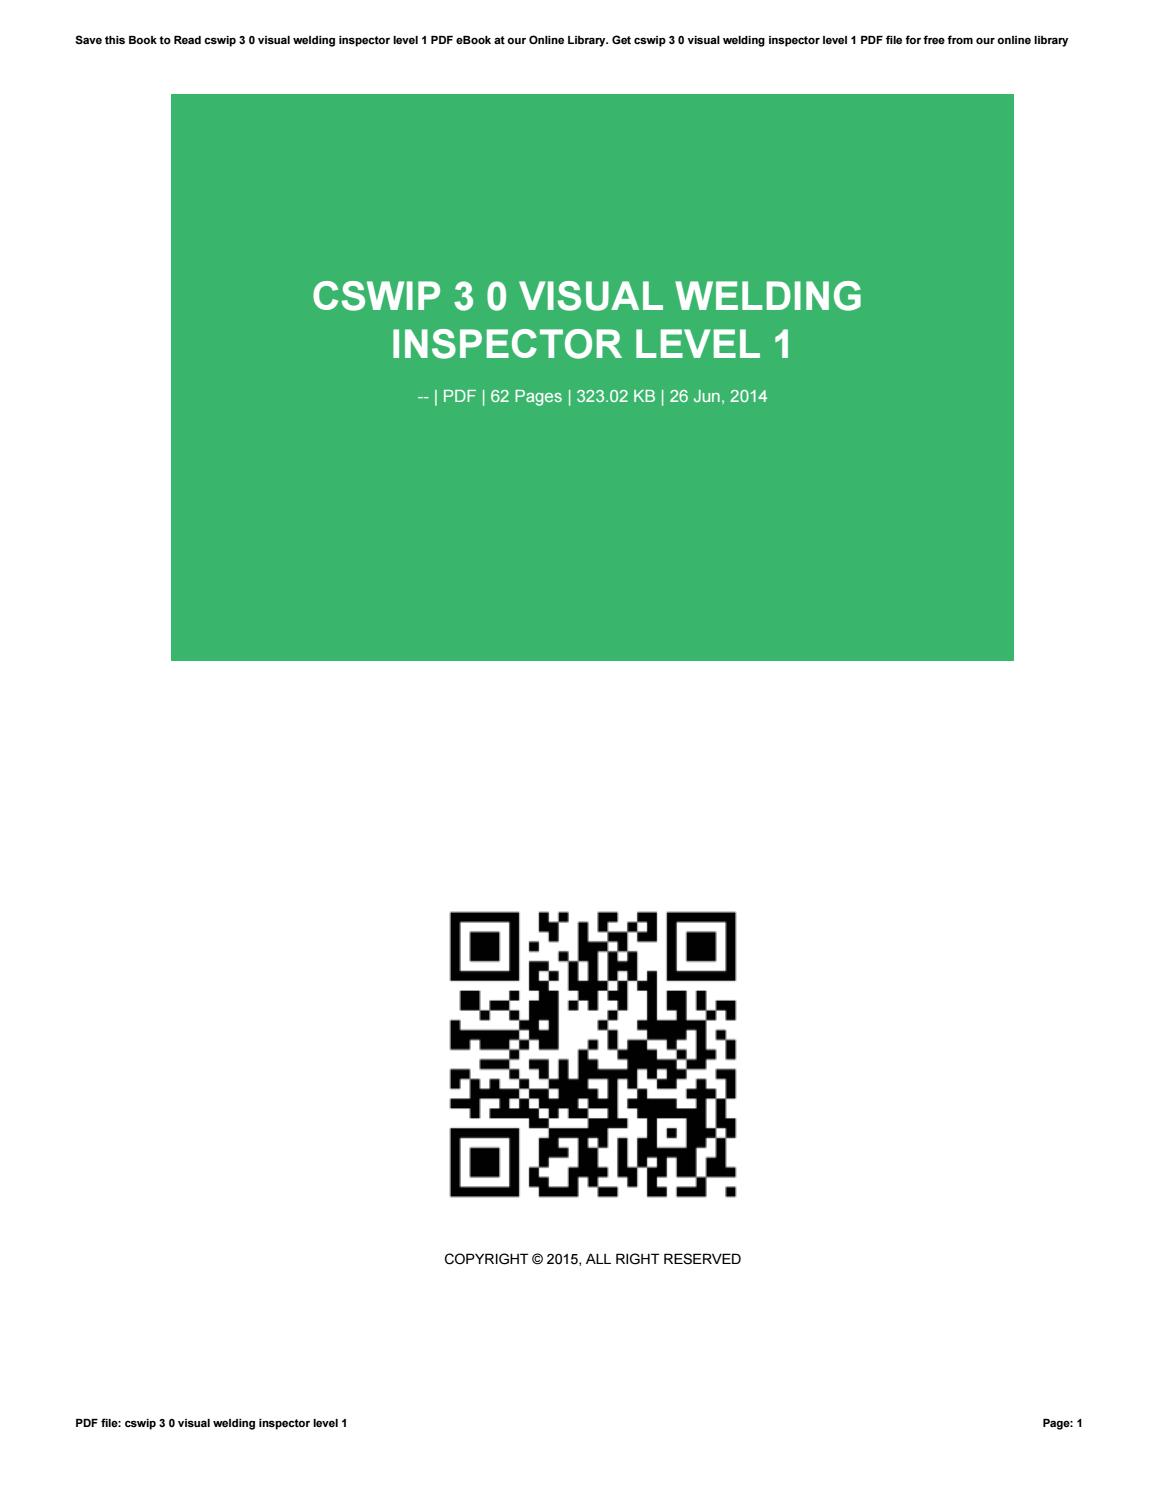 Cswip Visual Welding Inspector